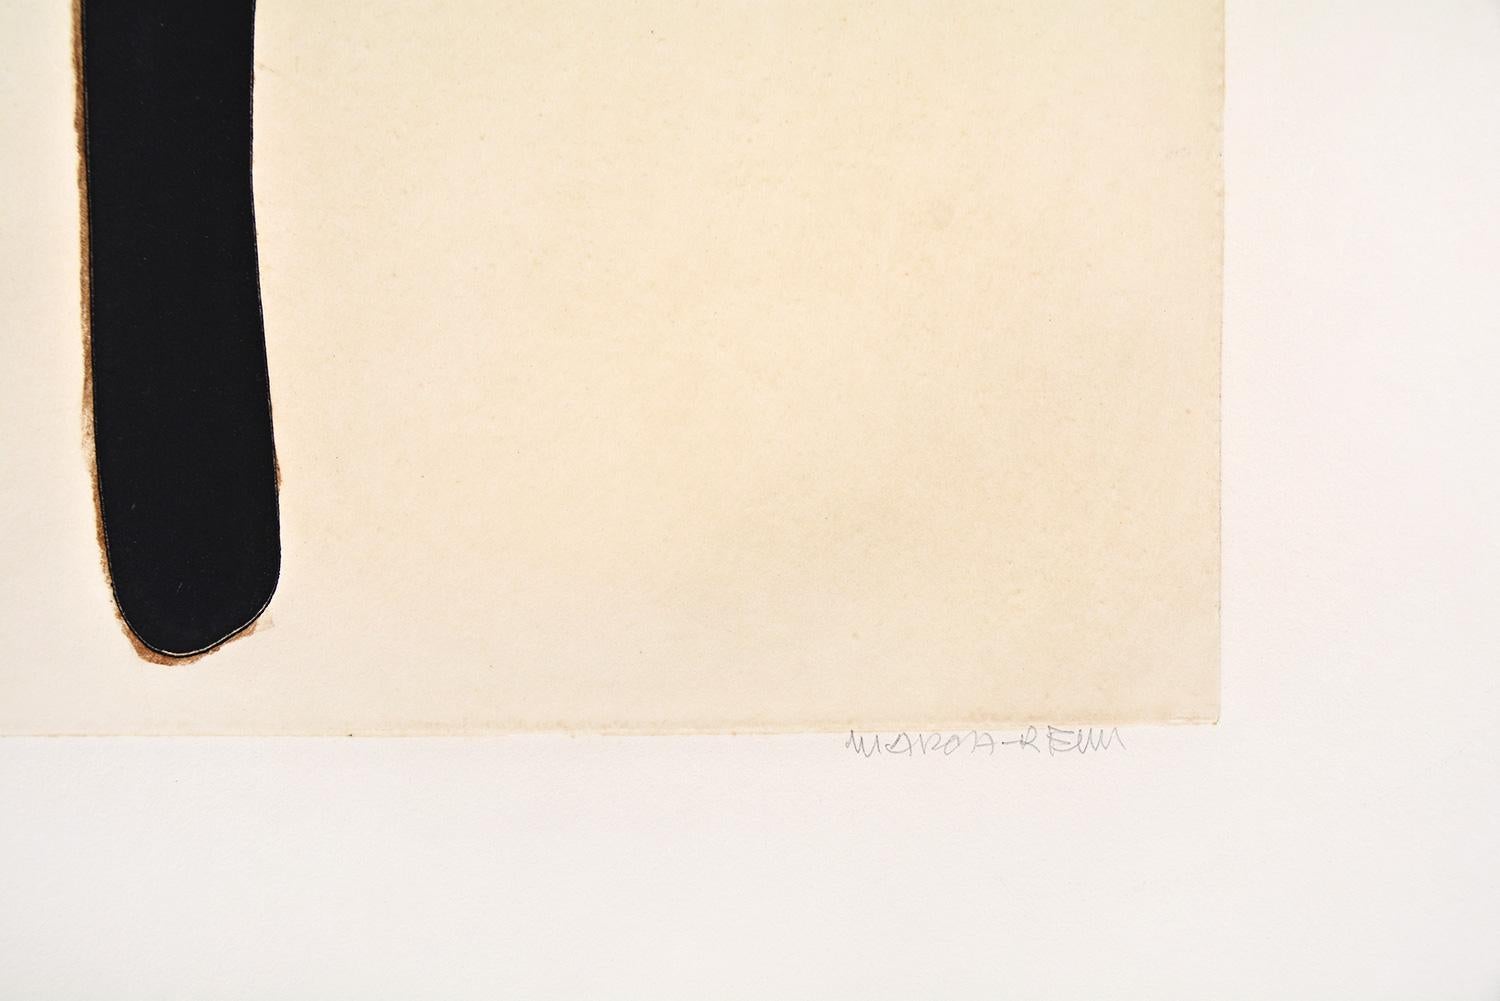 Conrad Marca-Relli - Composition XI
Date de création : 1977
Support : Gravure et aquatinte sur papier Gvarro
Numéro d'édition : 57/75
Taille : 56 x 76 cm
Condit : En très bon état et jamais encadré
Observations : Gravure et aquatinte sur papier